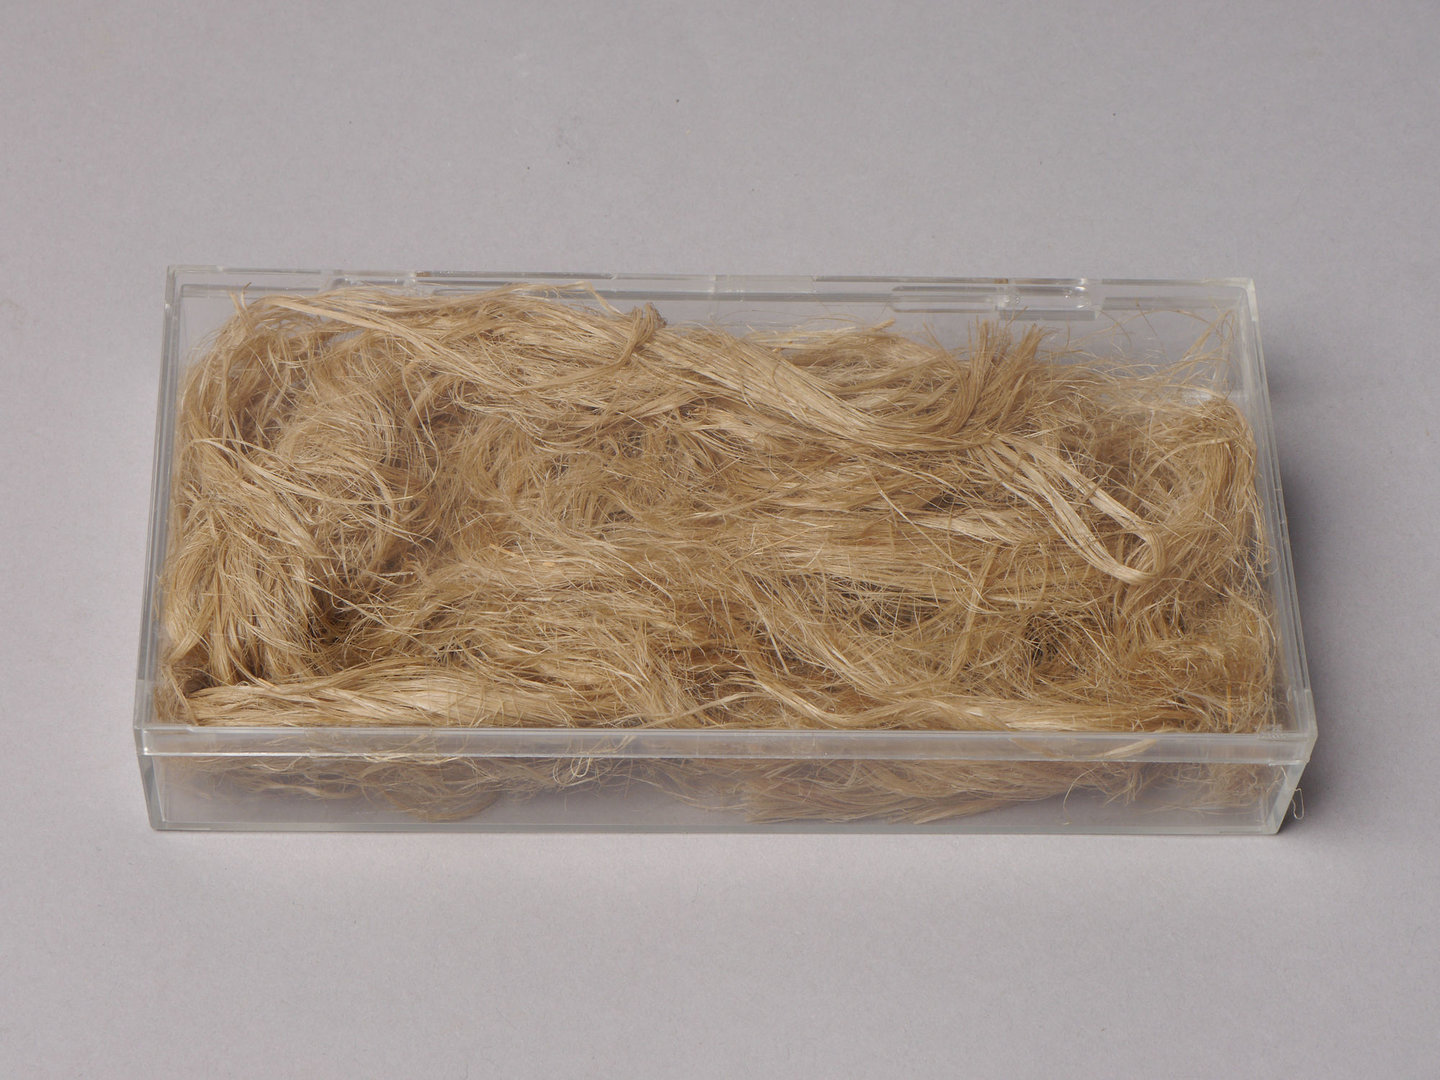 Staal van vlas (breekvlas waterroot)